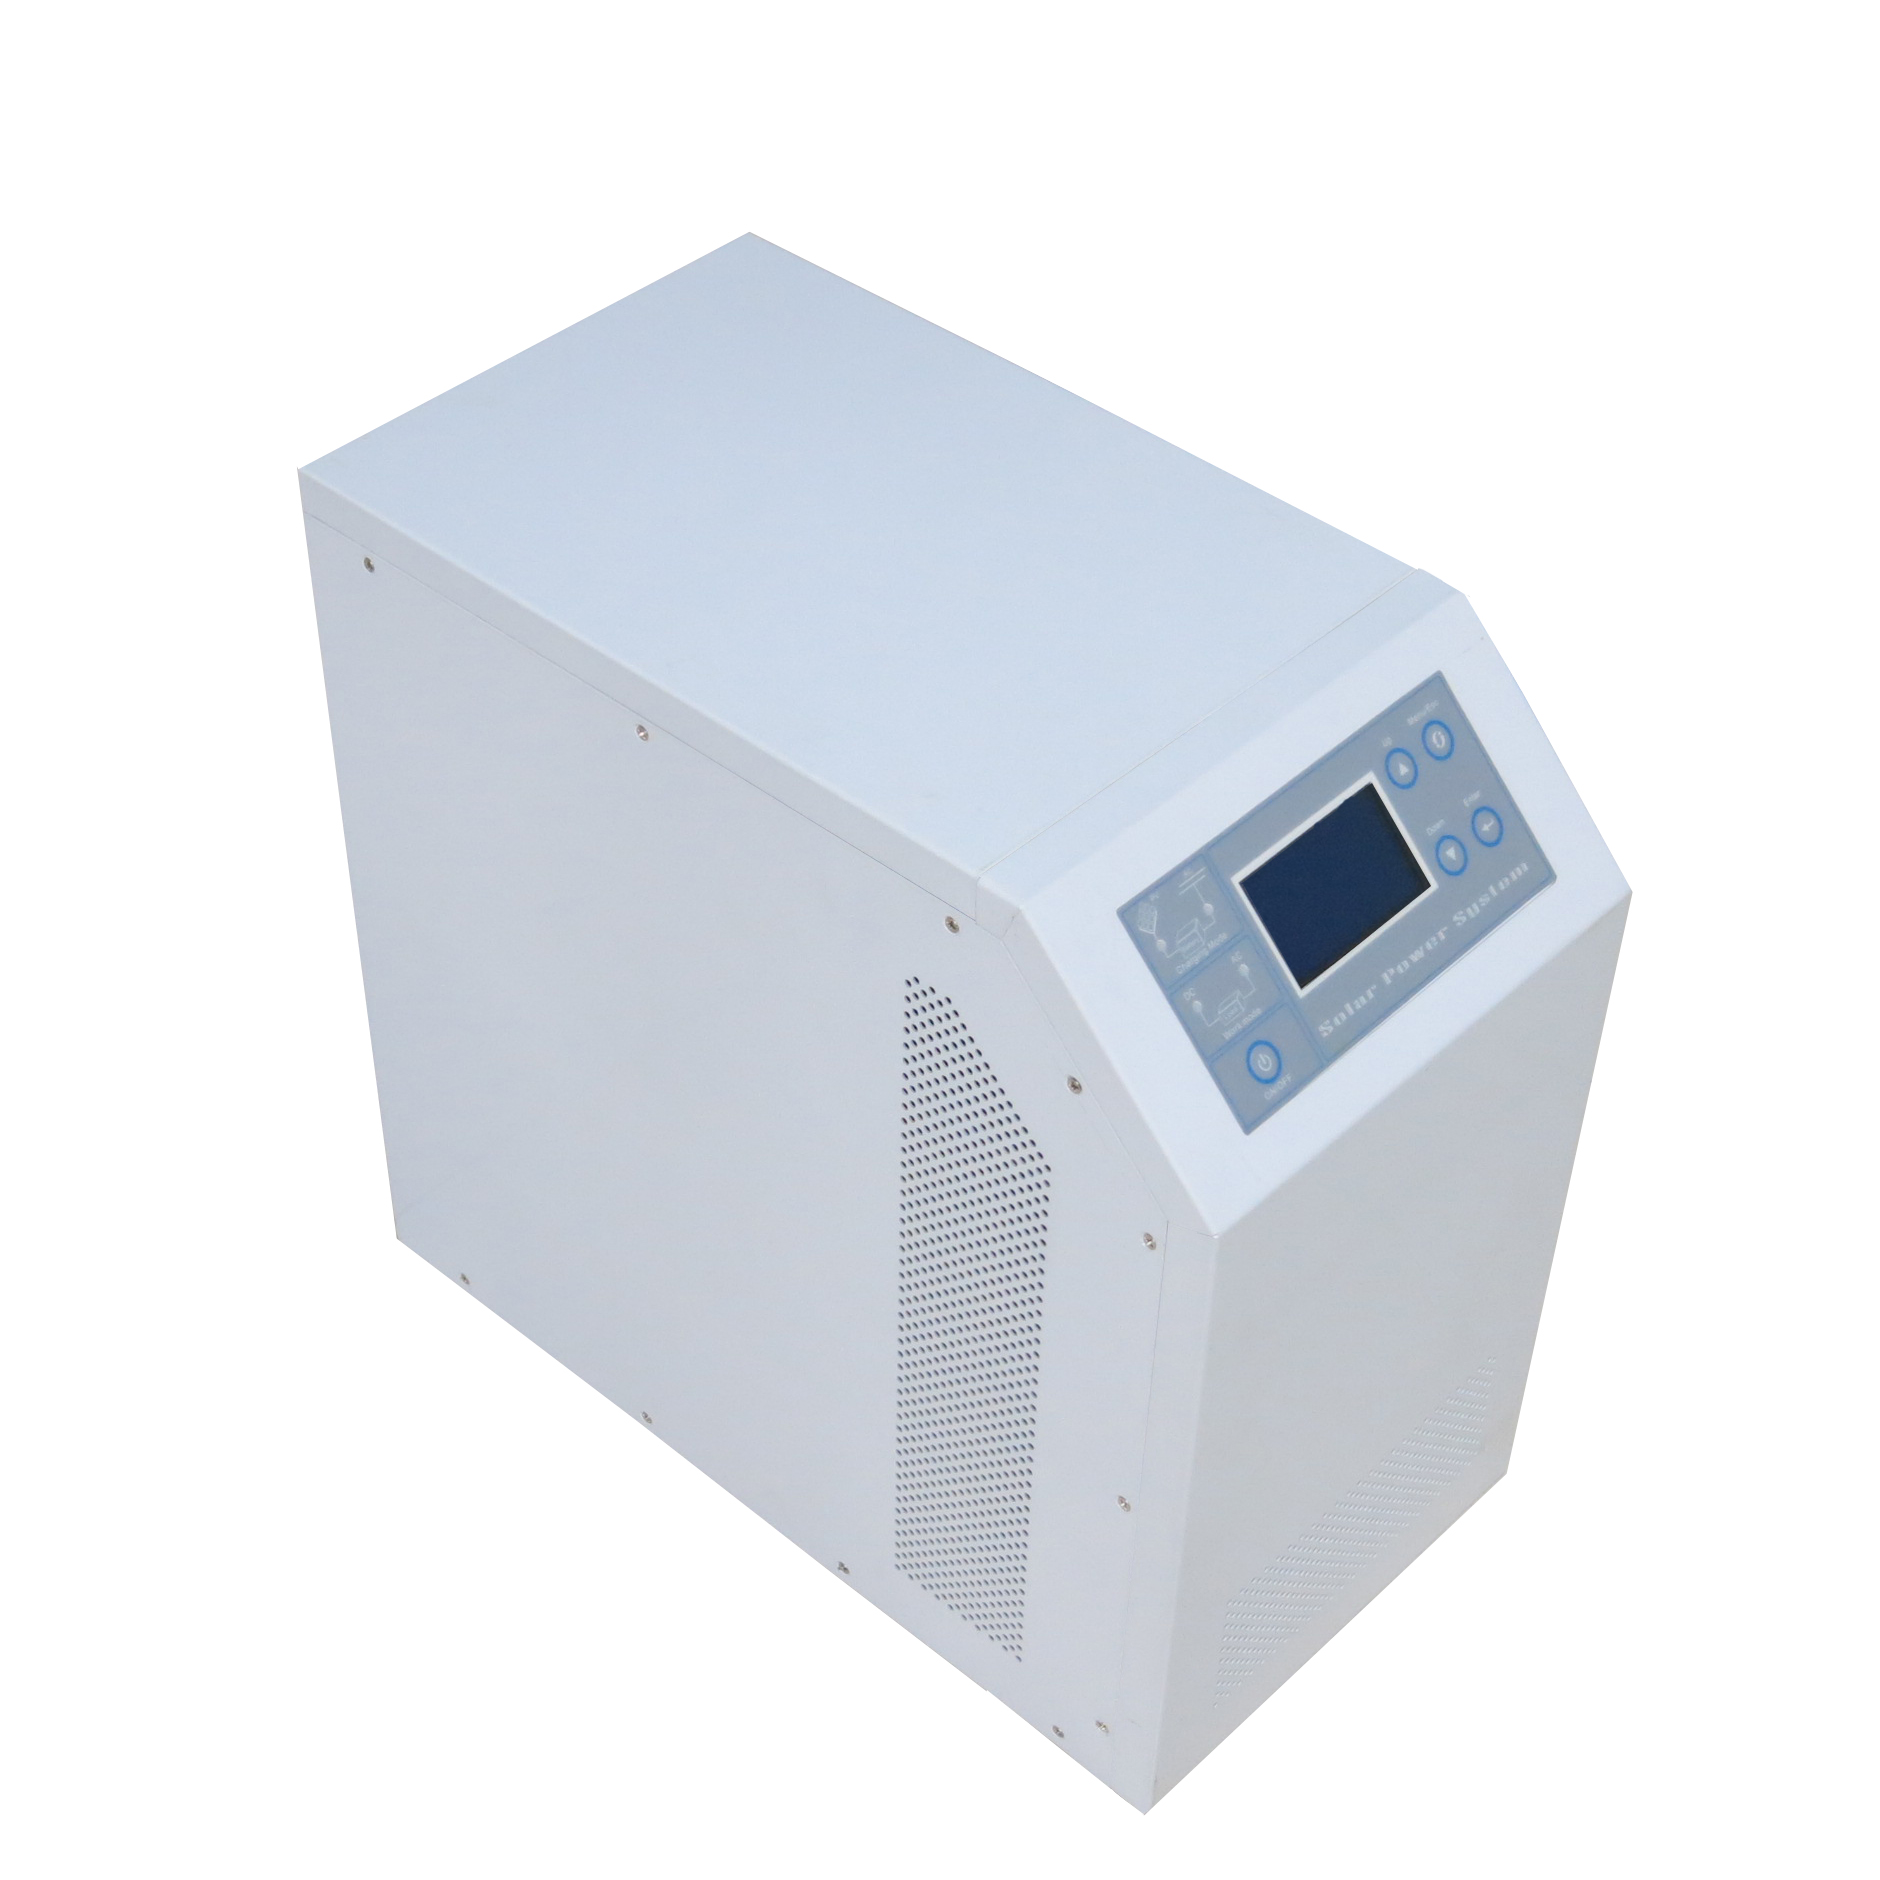 2014 πιο έξυπνη HPC σχεδιασμού off-grid inverter είναι ενσωματωμένη στην ηλιακή ρυθμιστής MPPT 4000W 40A